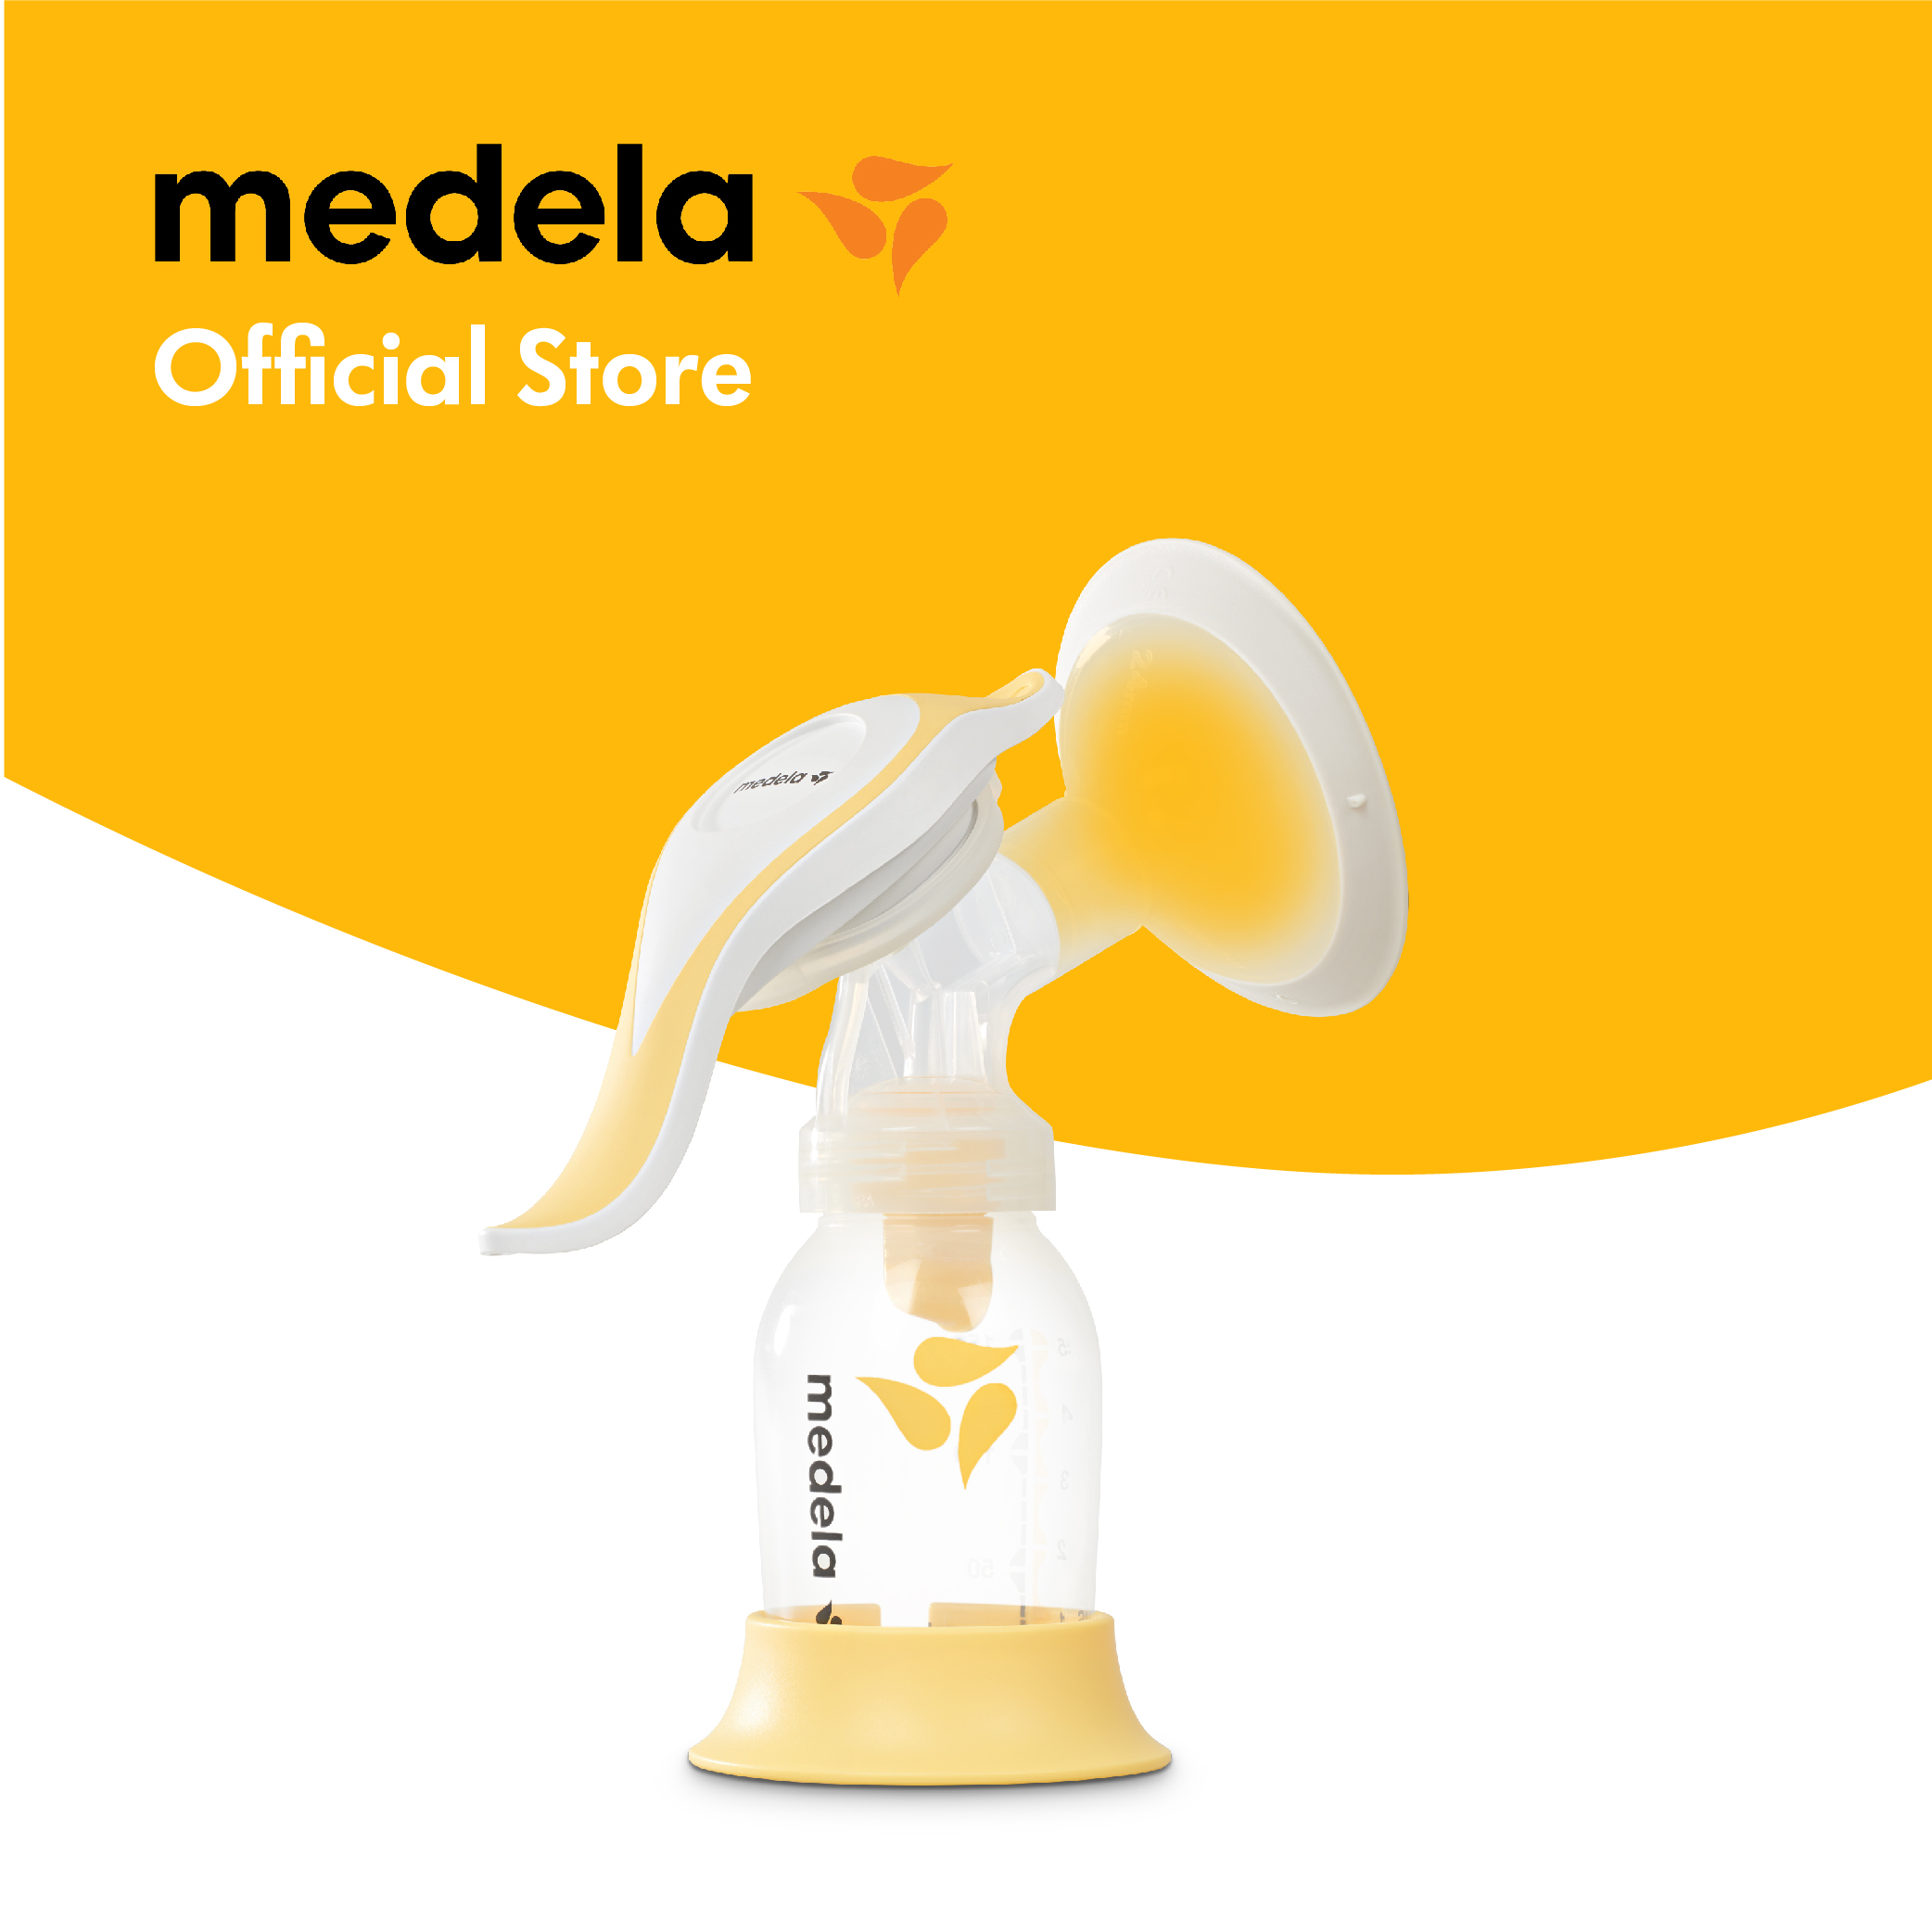 Buy Medela Personalfit Connector online